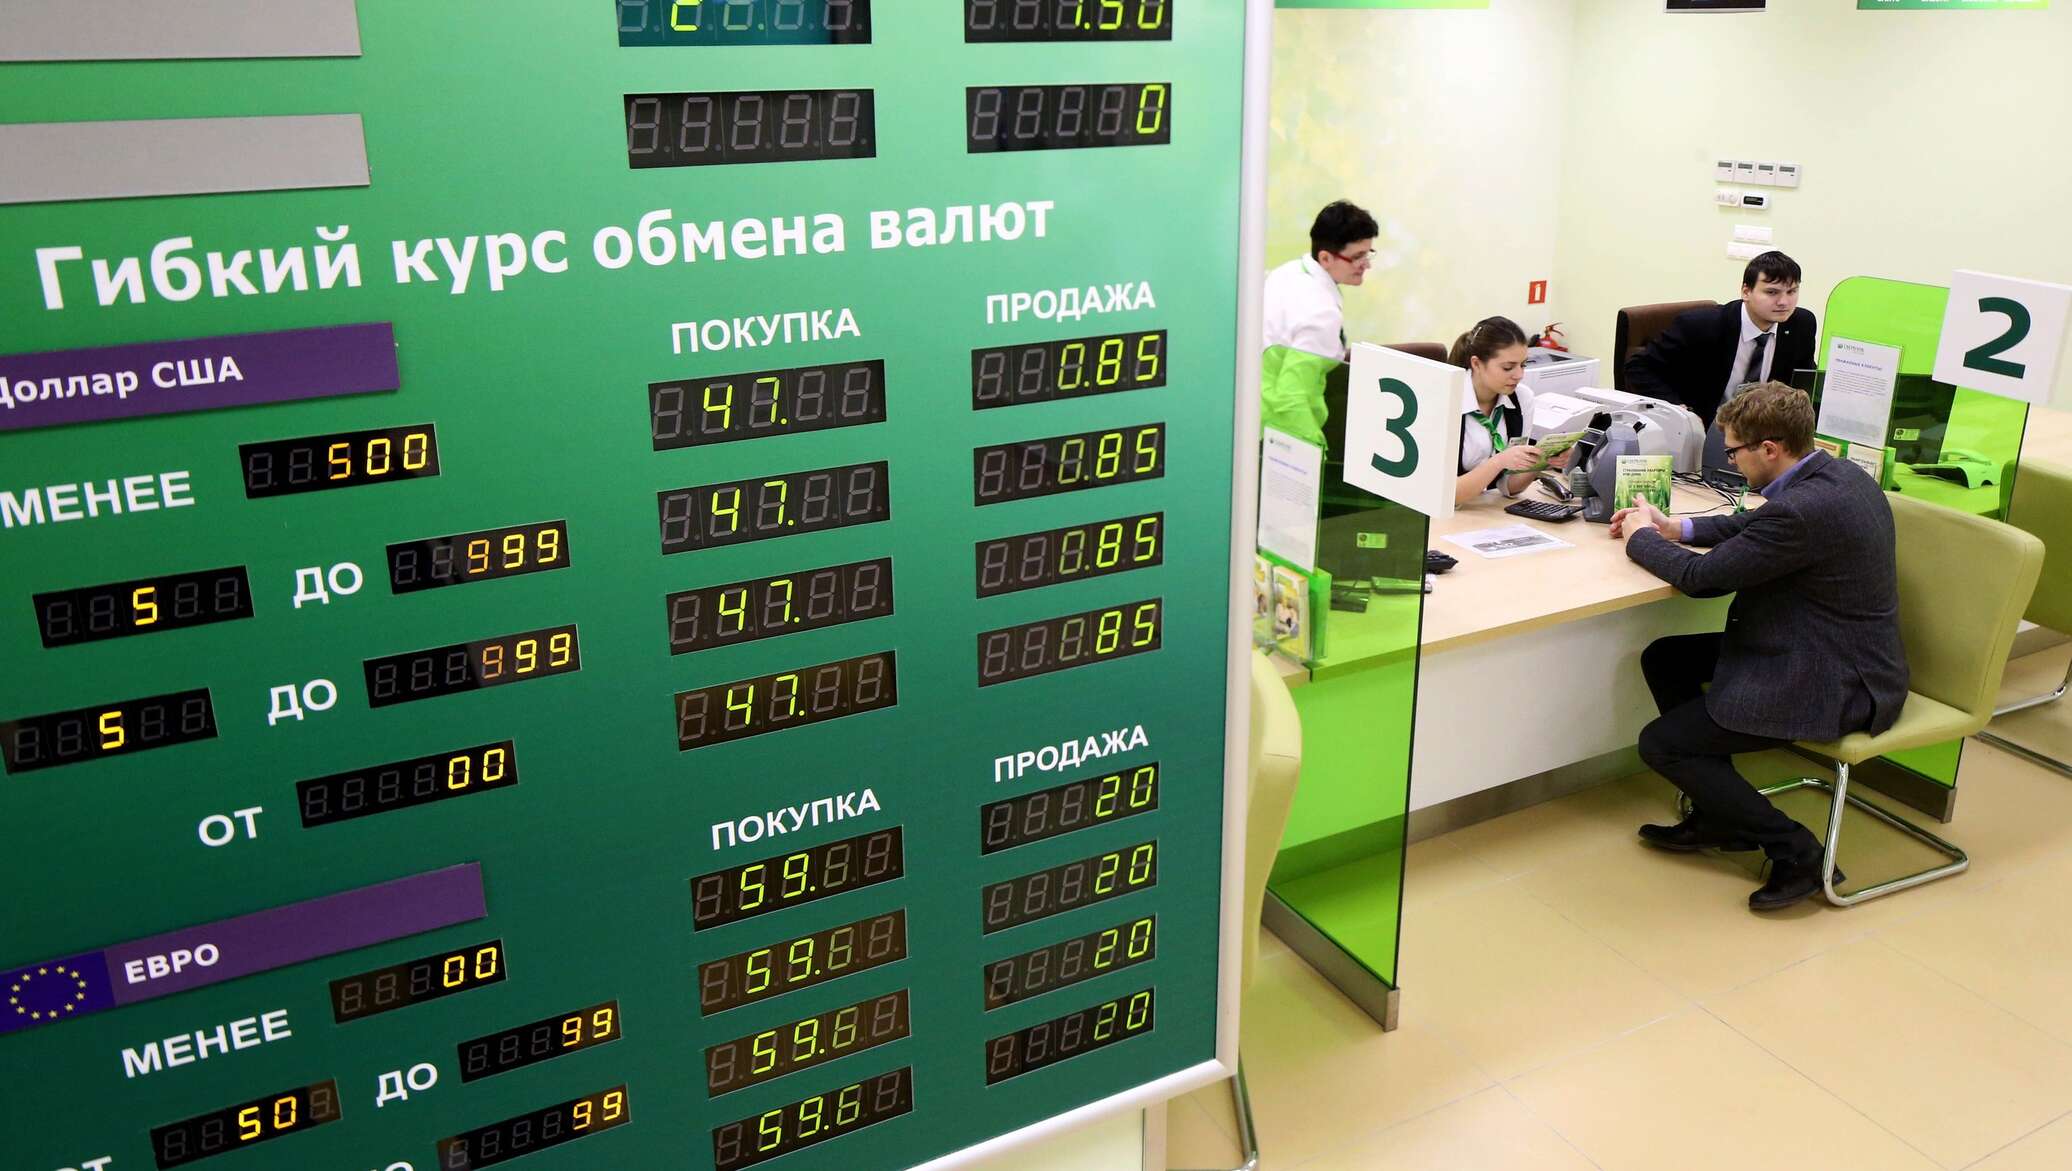 Обменять рубли на белорусские рубли в сбербанке. Обмен валюты в банке. Обменный пункт валюты. Обменный пункт в банке. Обменник в банке.